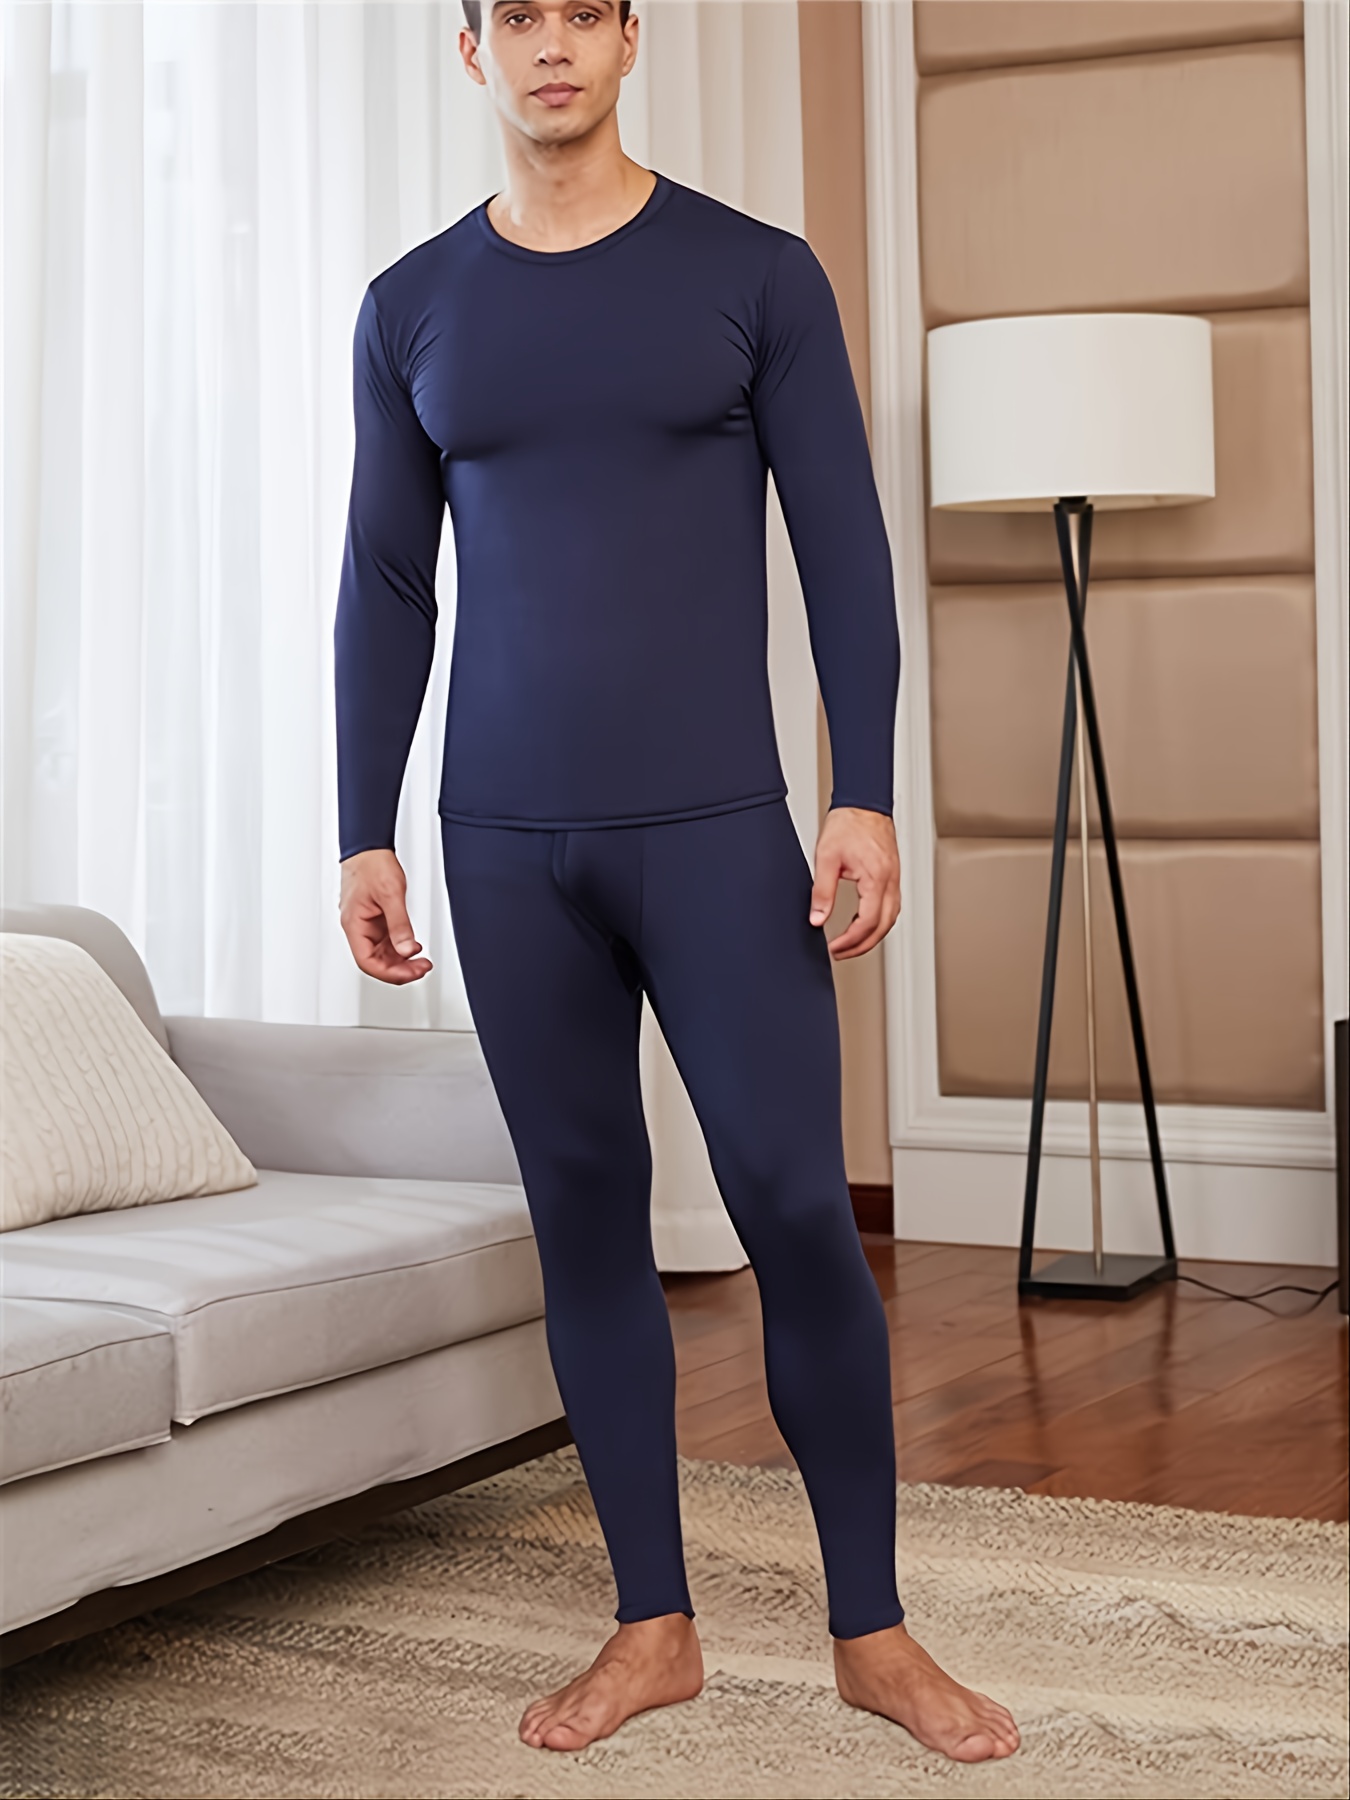  Men's Thermal Underwear - Men's Thermal Underwear